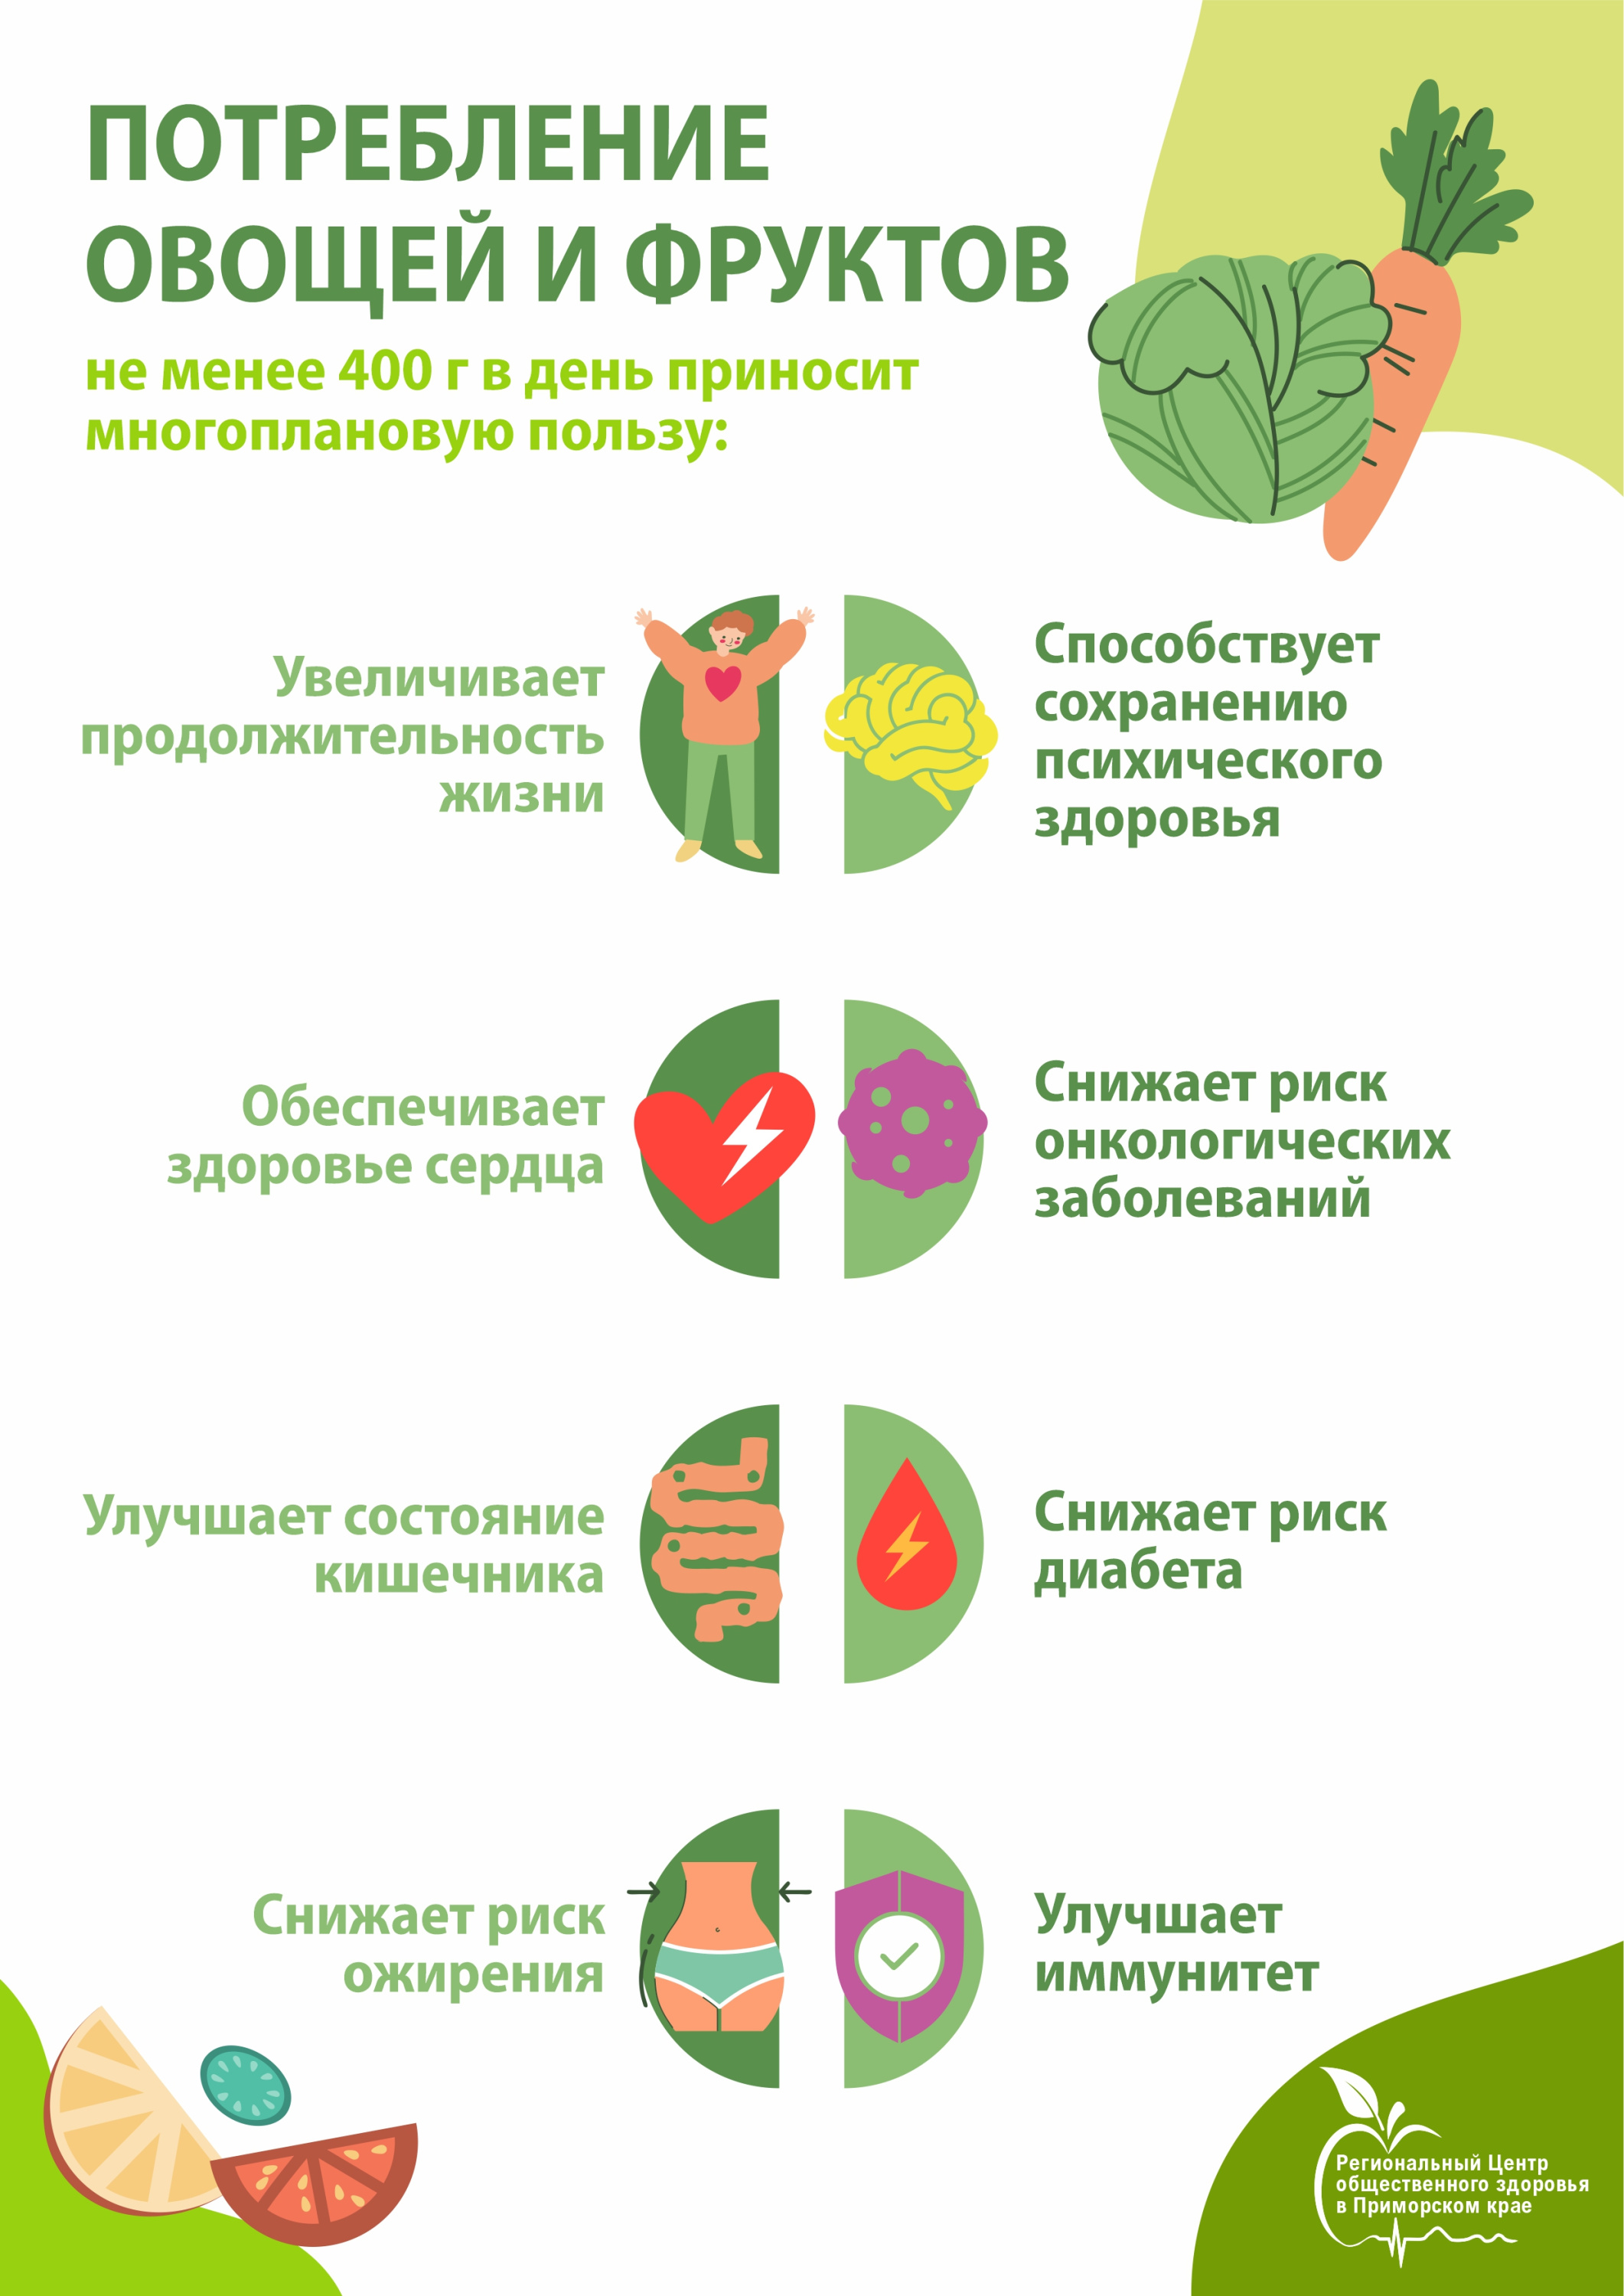 Потребление овощей и фруктов.jpg